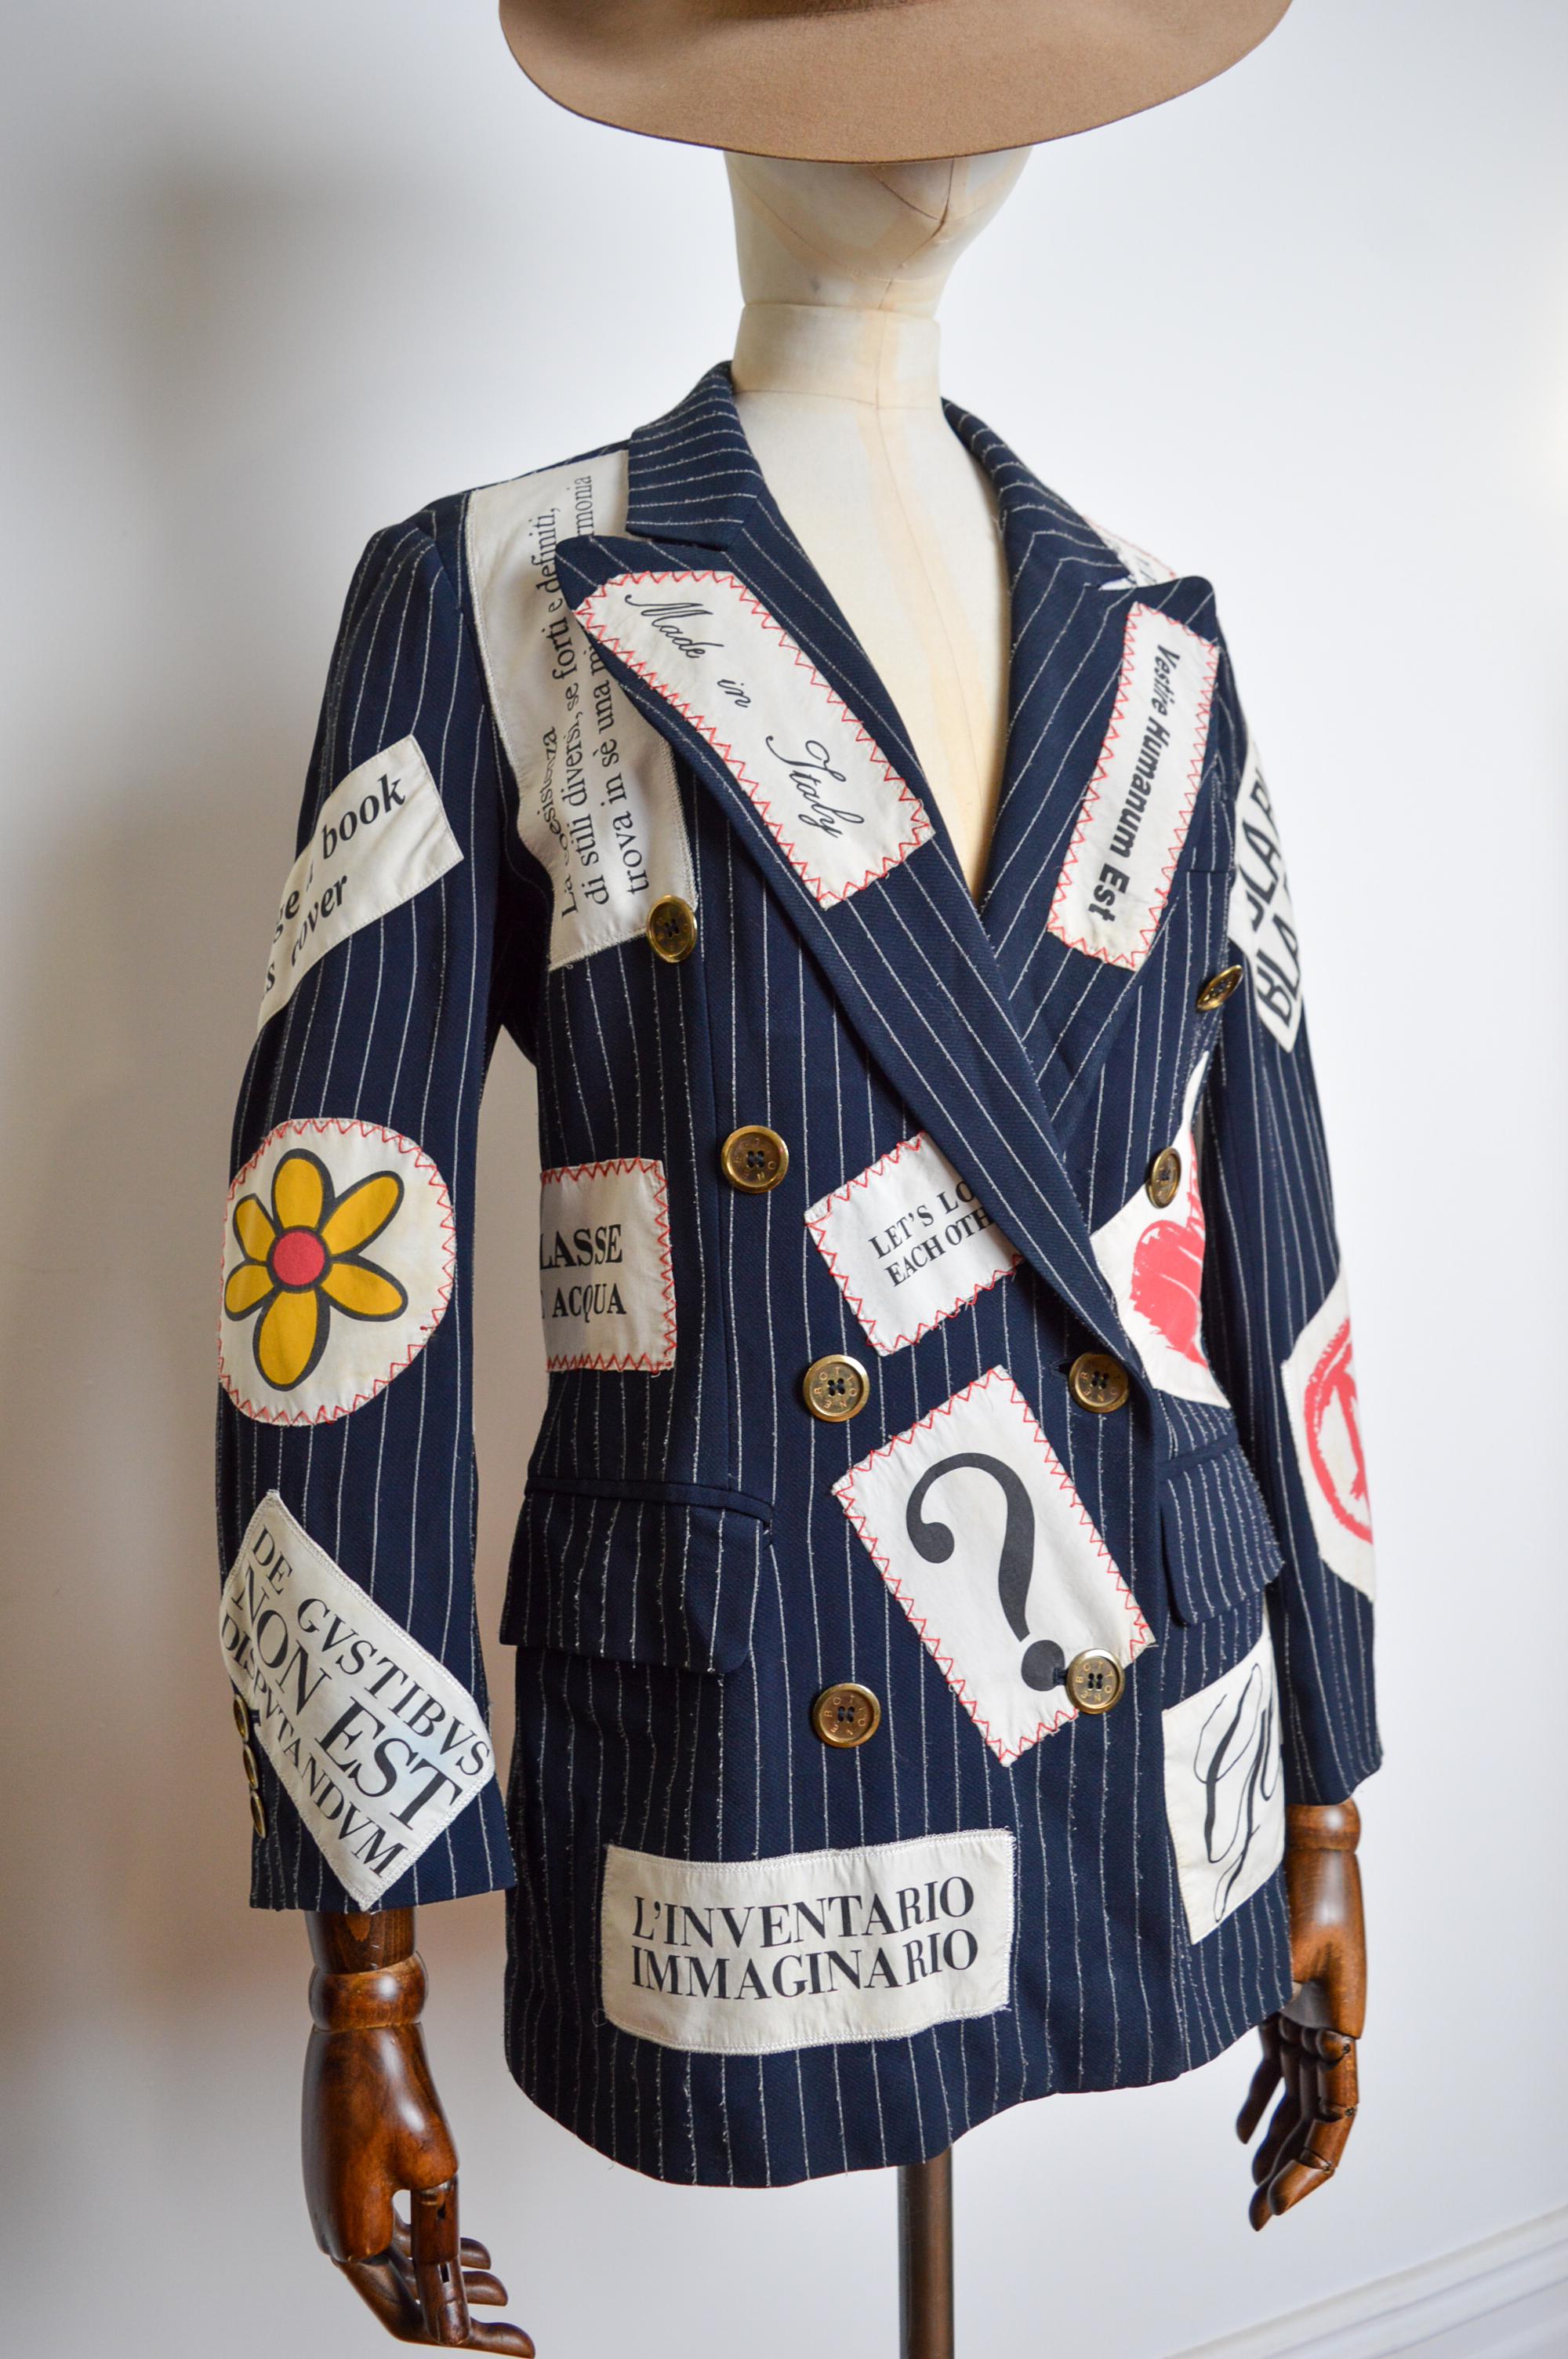 Printemps/été 1994 MOSCHINO Défilé, veste de blazer en patchwork cousue à la main, créée par Franco Moschino.

Look 51 / Look 54 Référence du défilé.

FABRIQUÉ EN ITALIE.   

Cette superbe veste Vintage d'archives est fabriquée à partir d'un tissu à